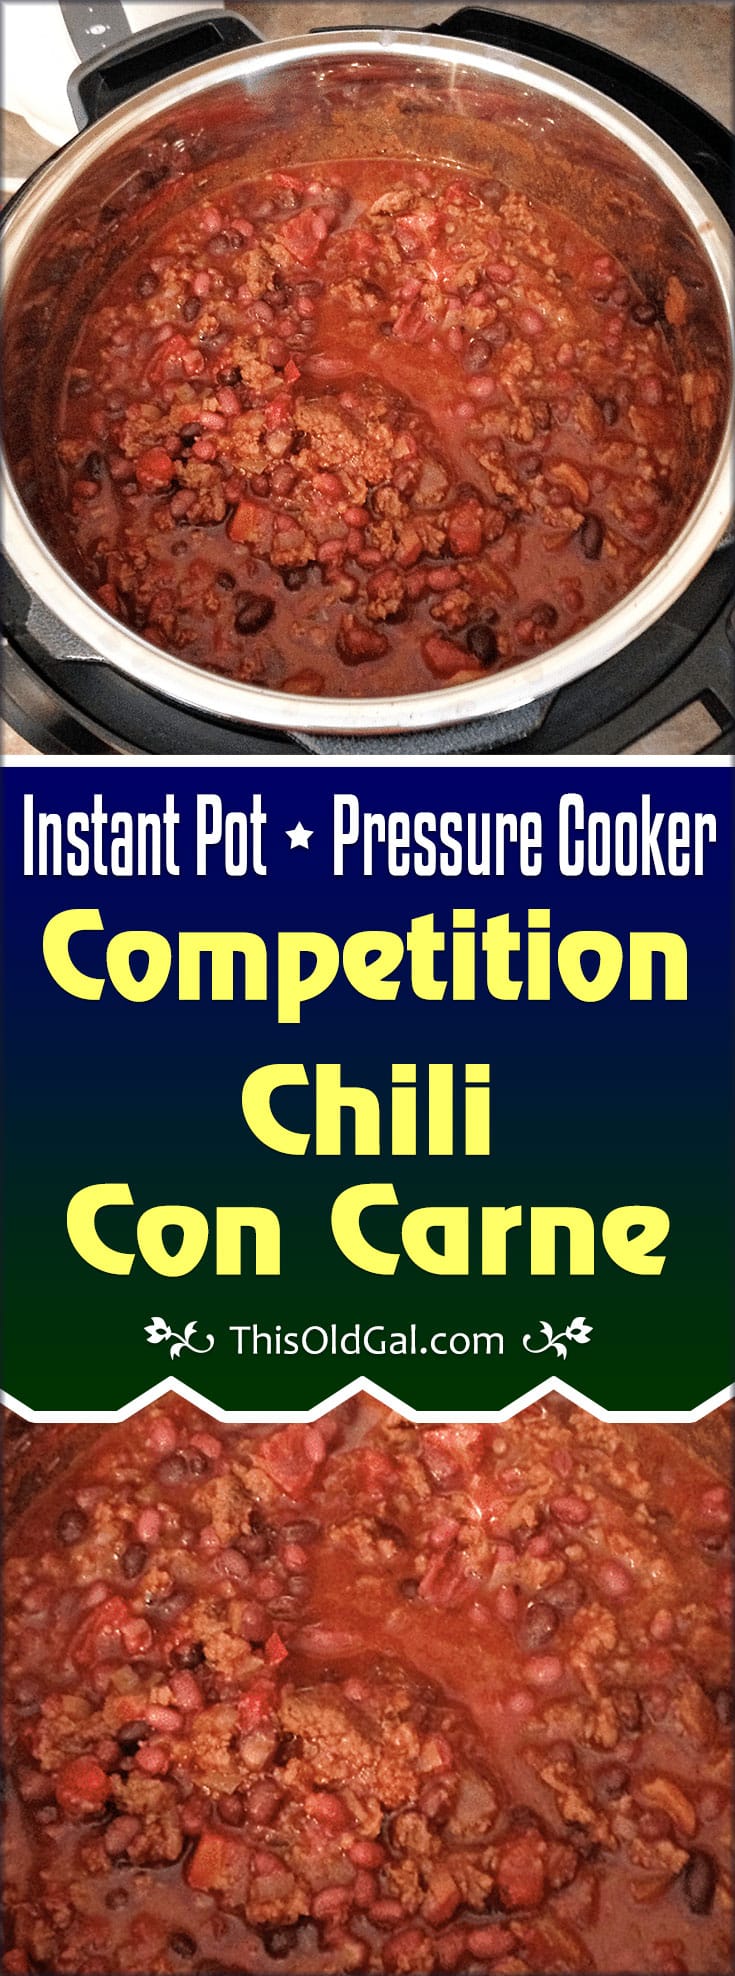 Pressure Cooker Competition Chili Con Carne